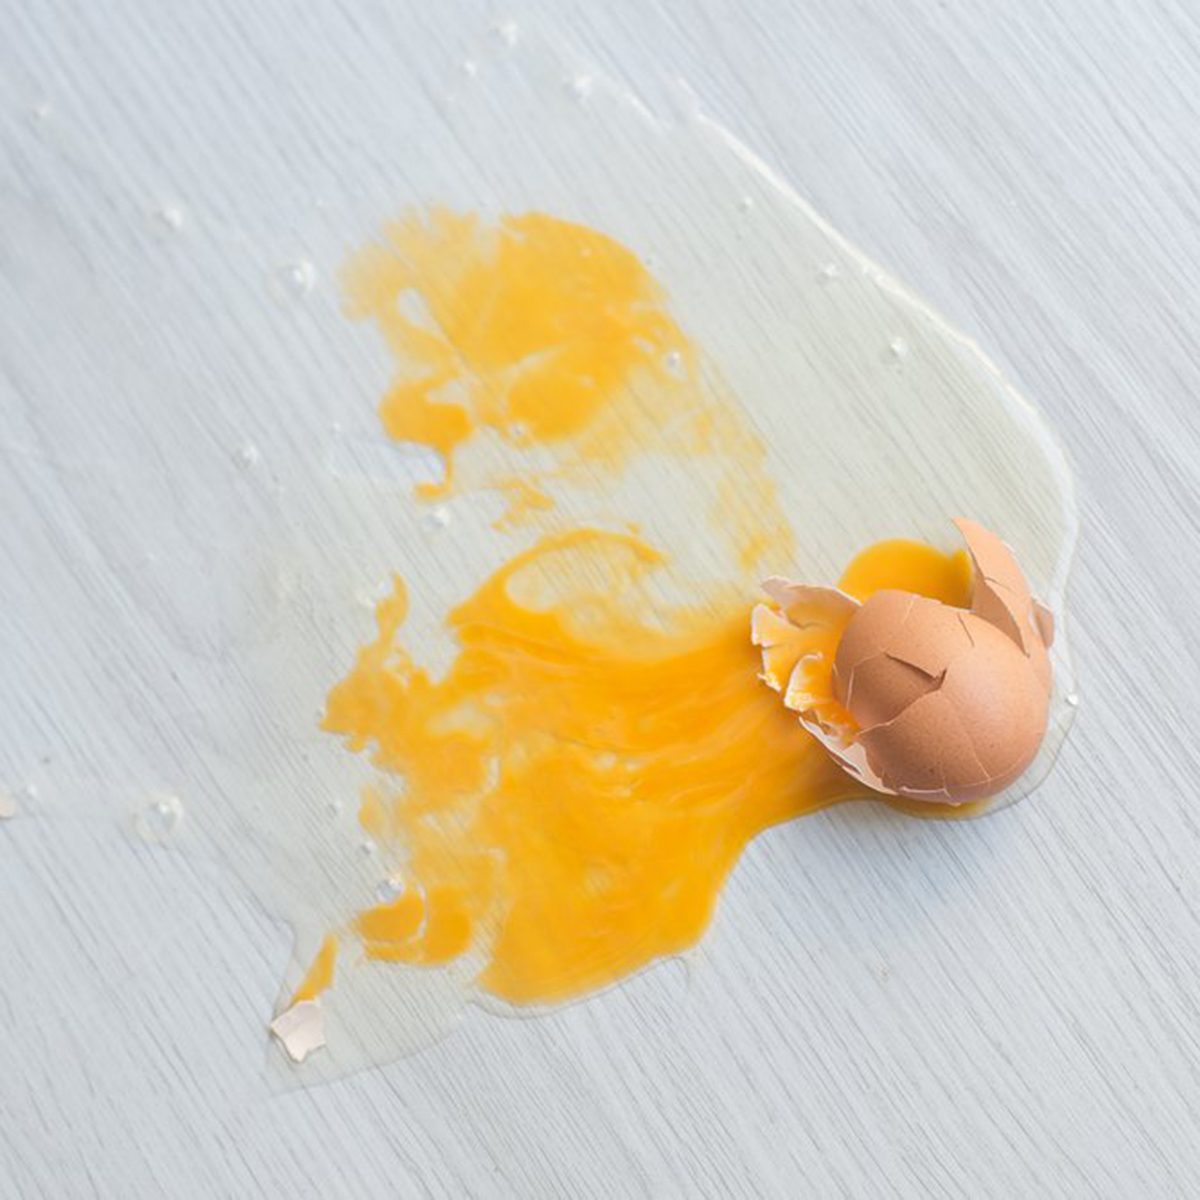 Egg spill